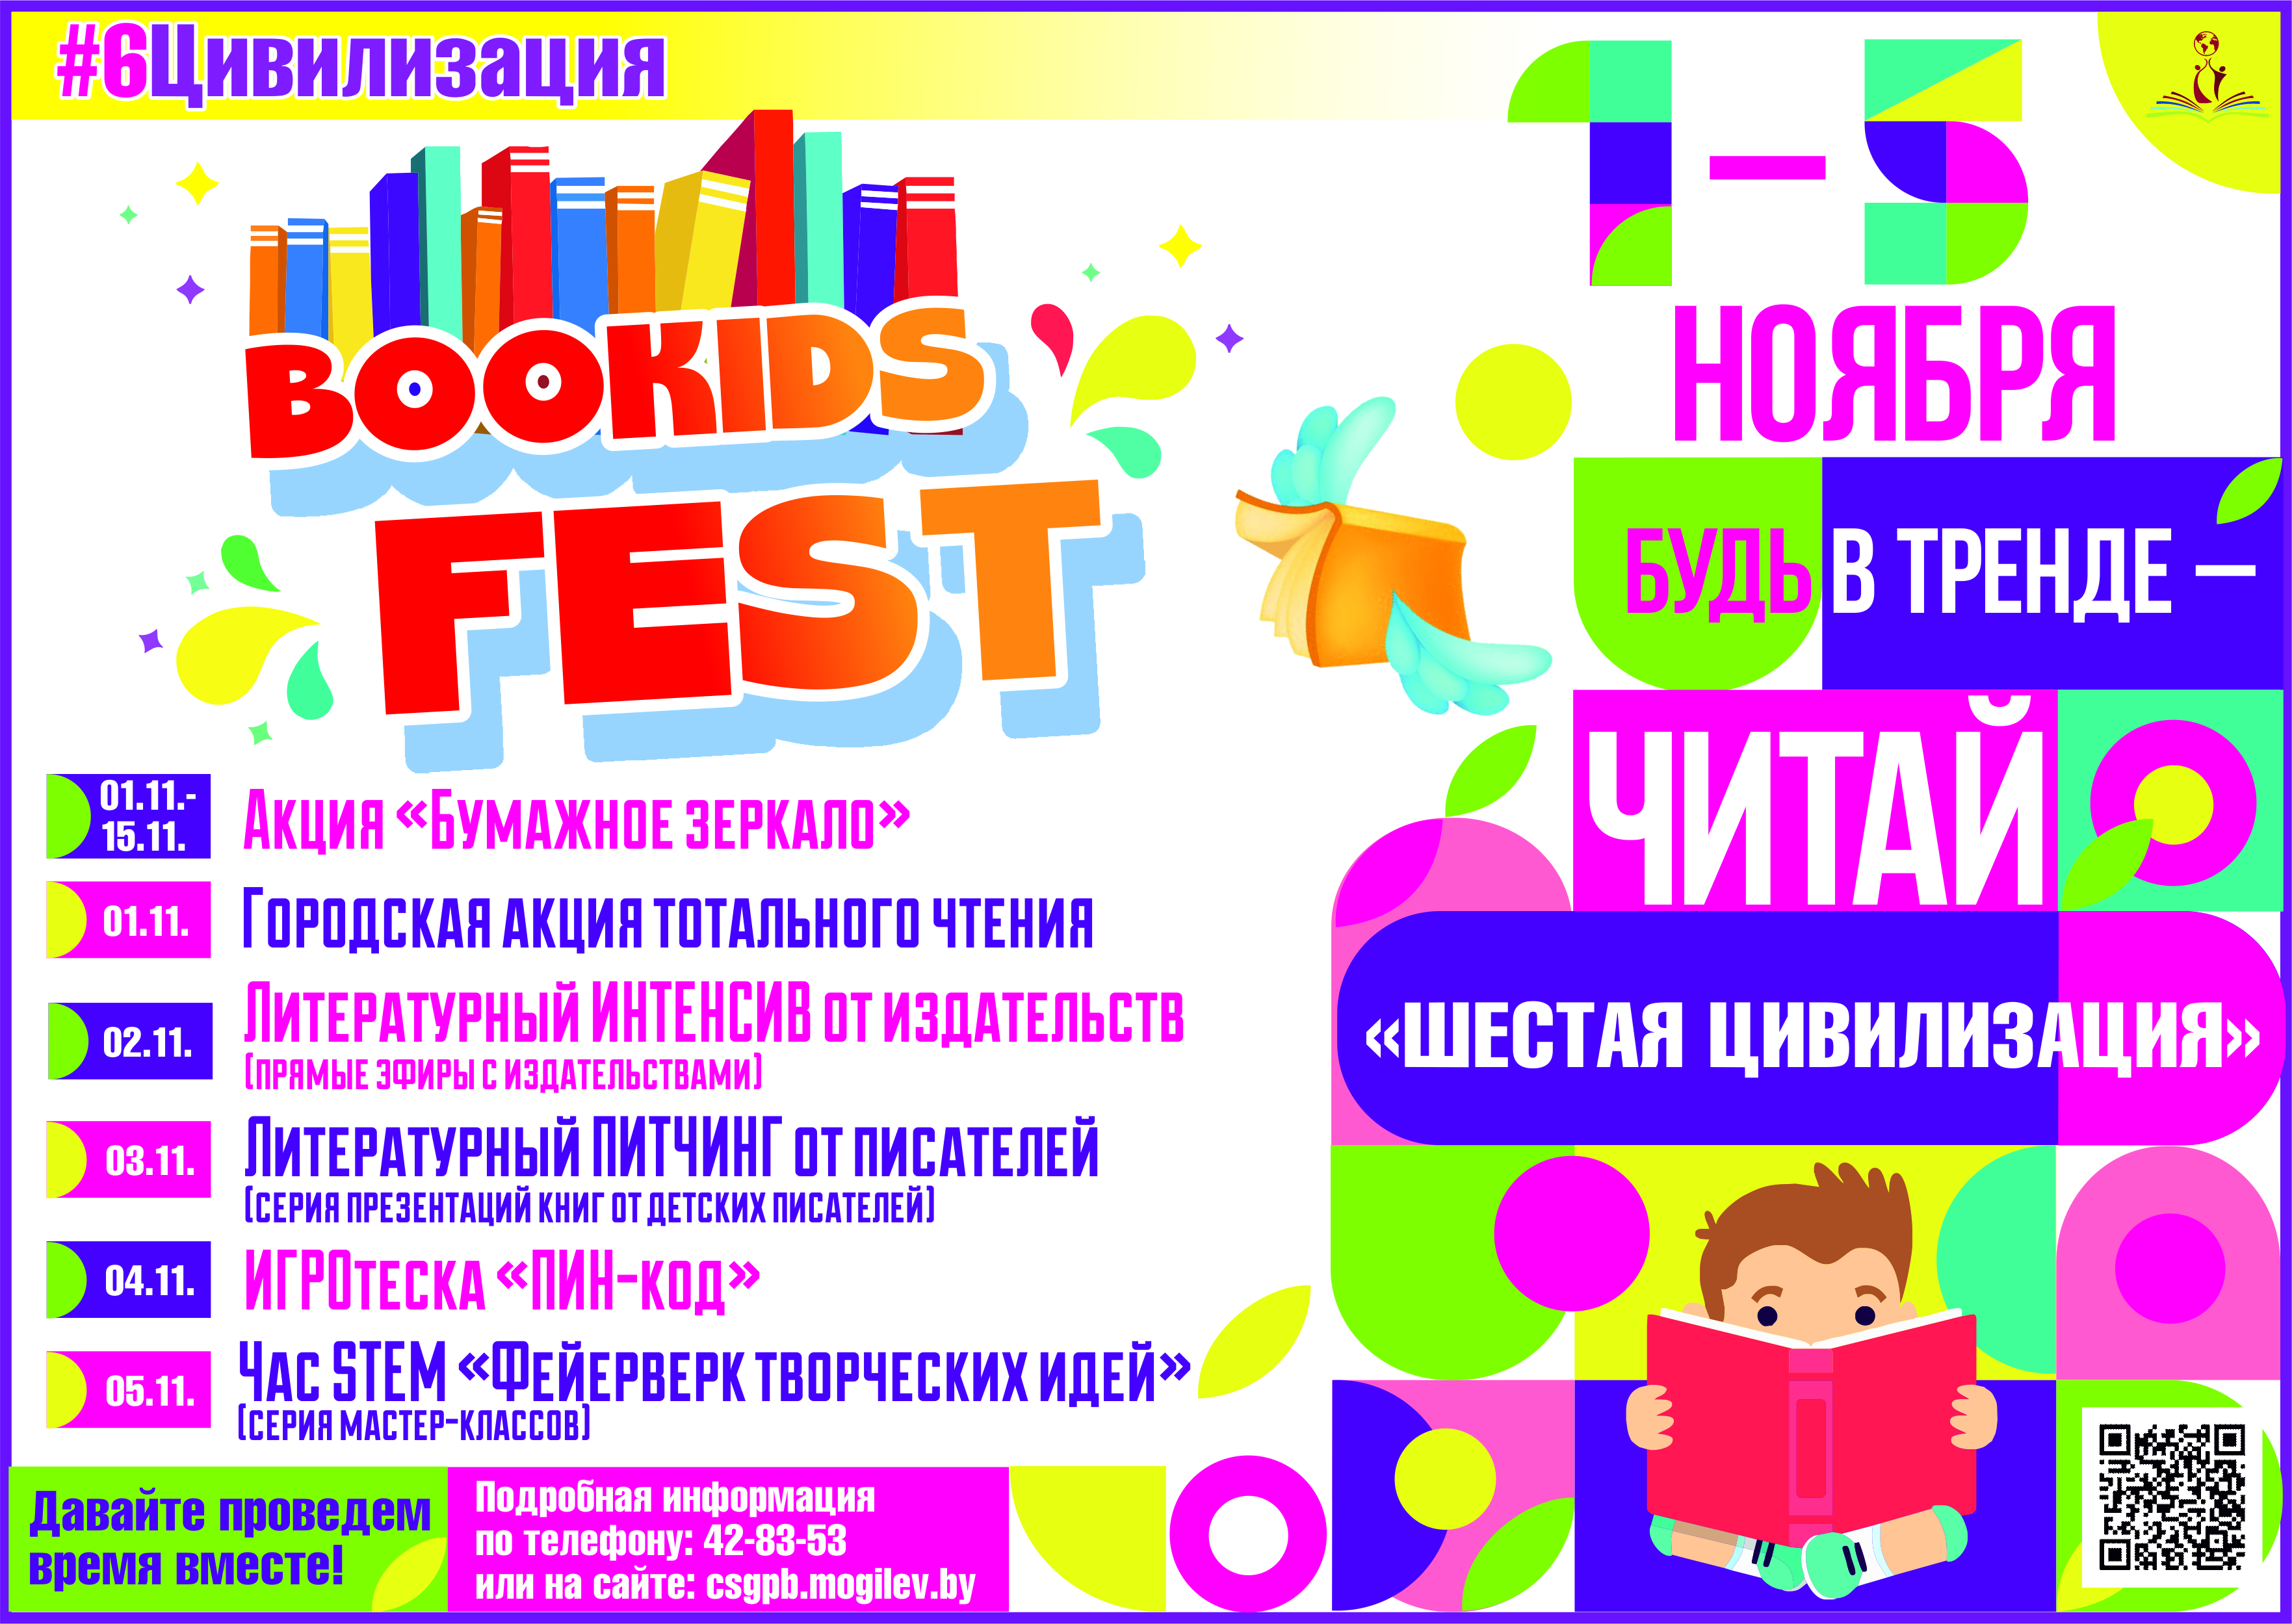 Детский книжный фестиваль «Шестая цивилизация» пройдет в Могилеве с 1 по 5 ноября 